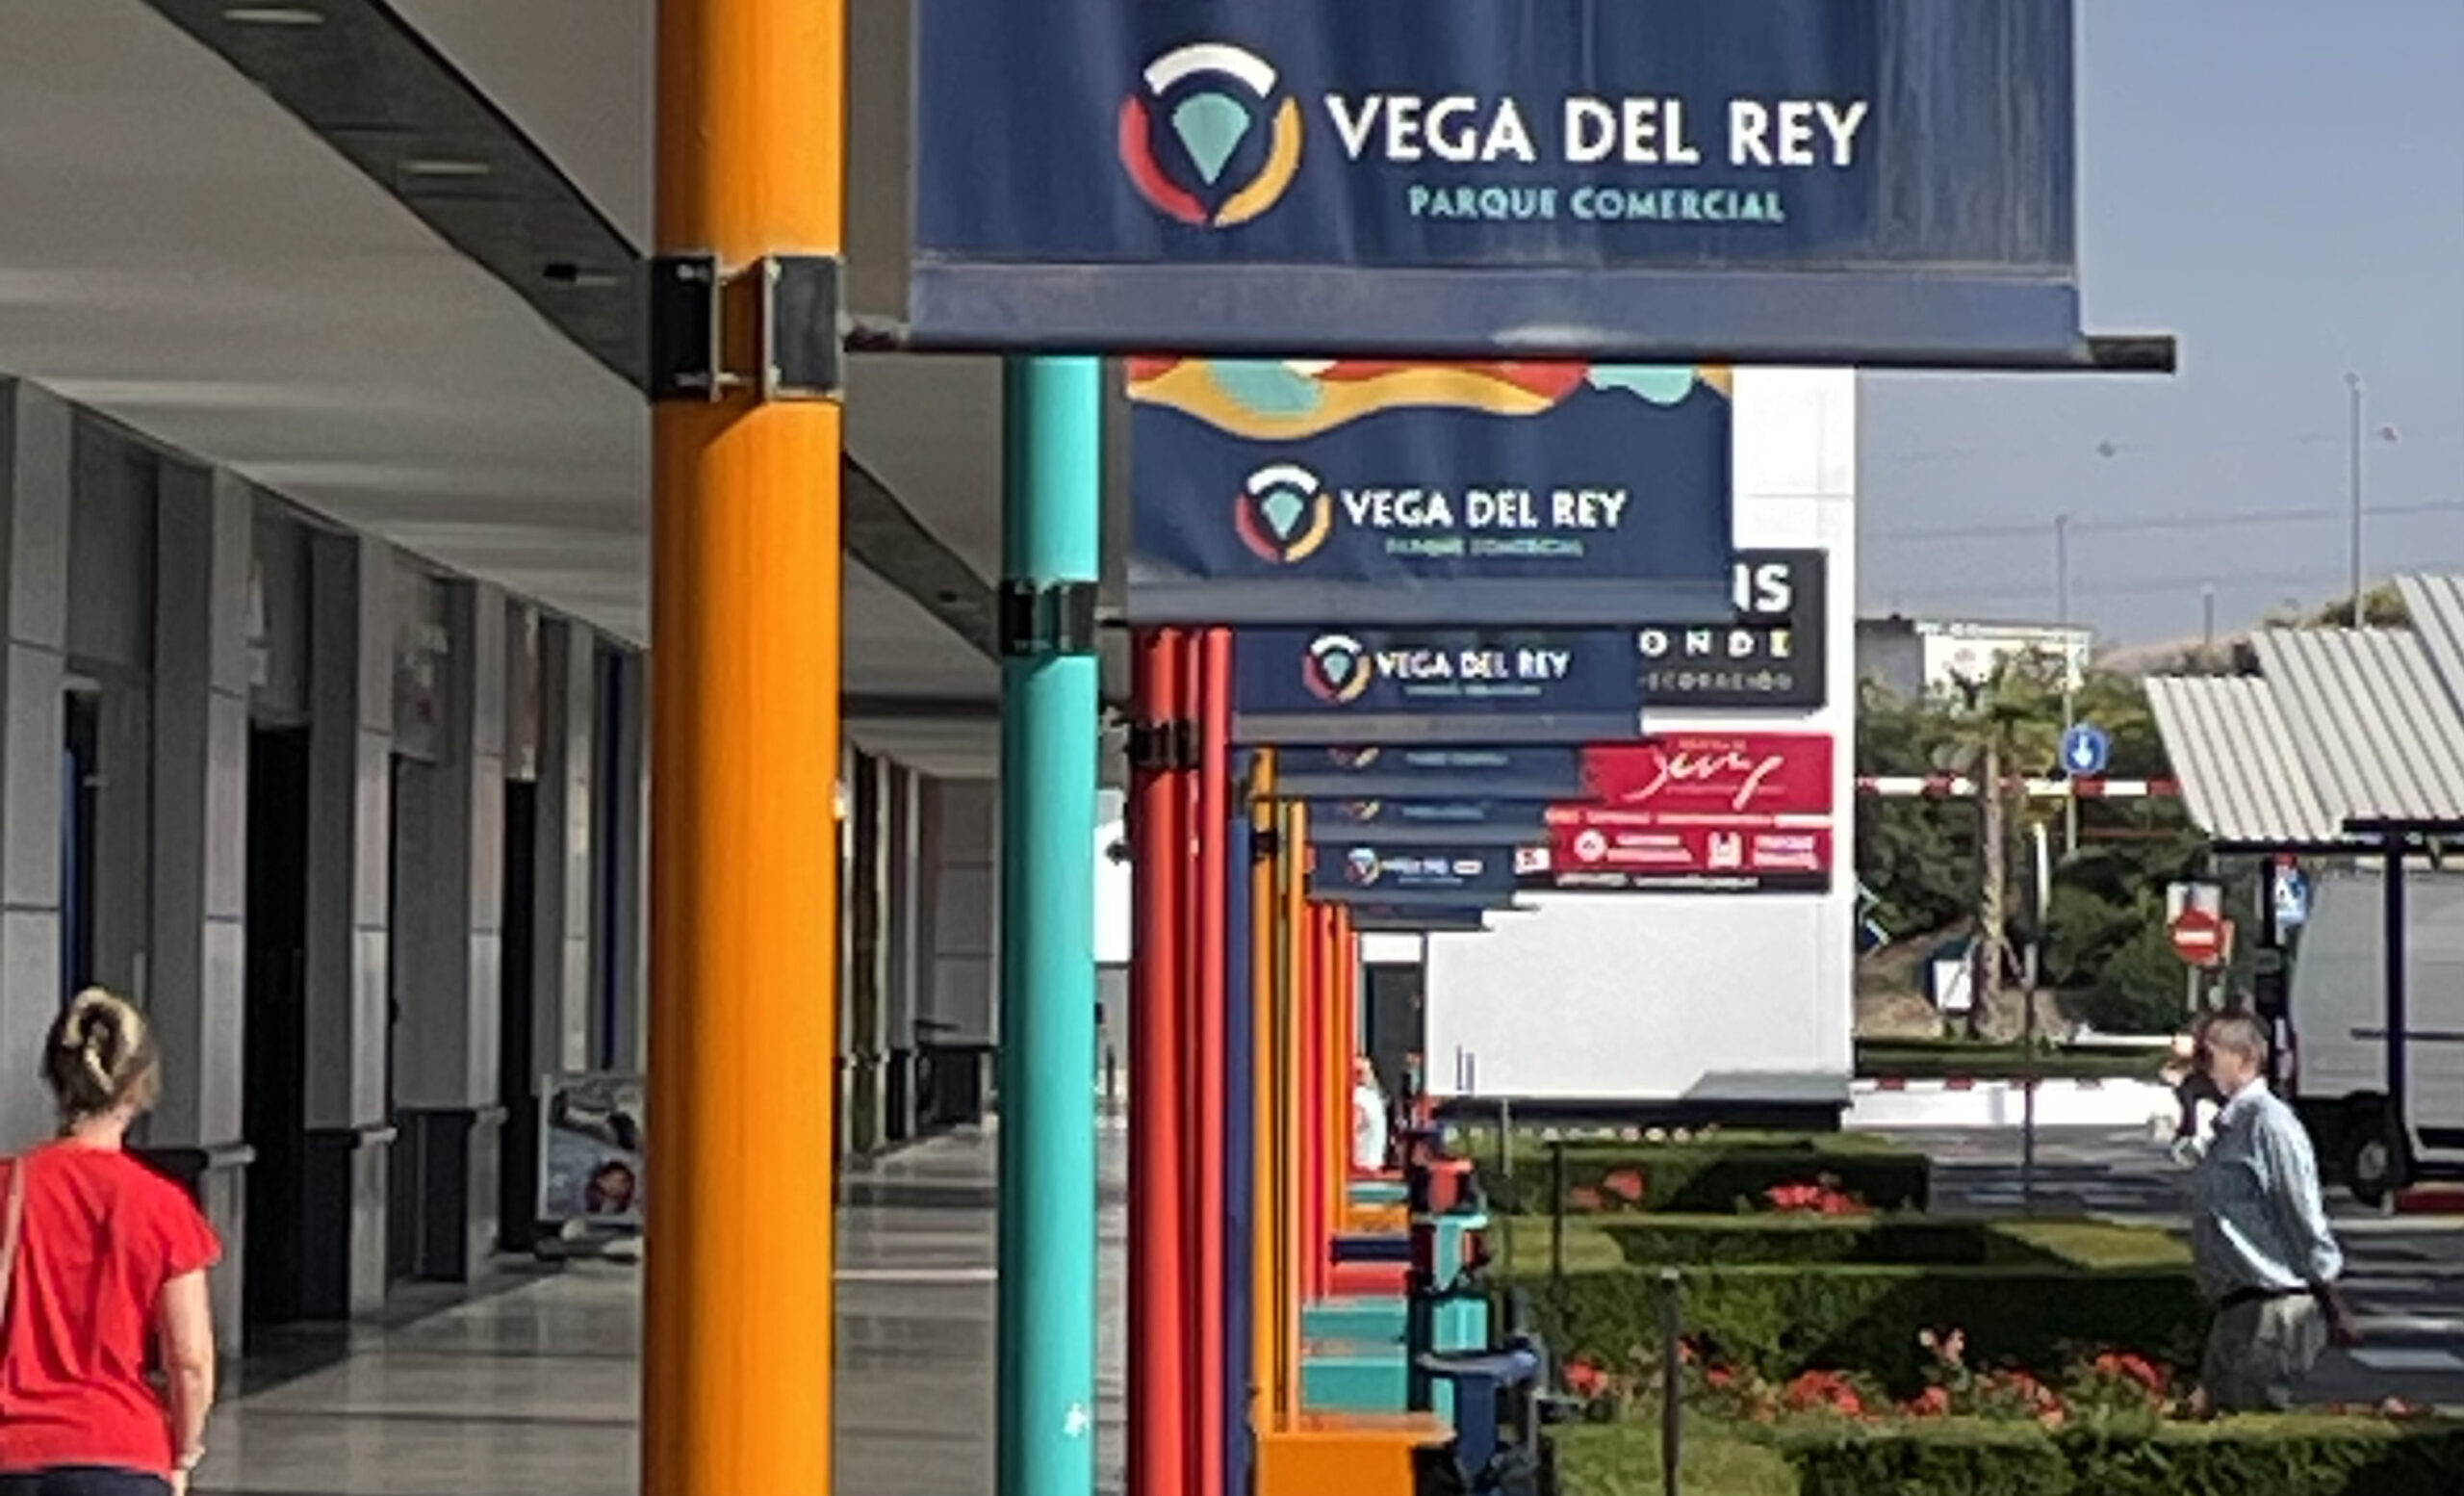 Ya estamos de rebajas en las tiendas del Parque Comercial Vega del Rey.